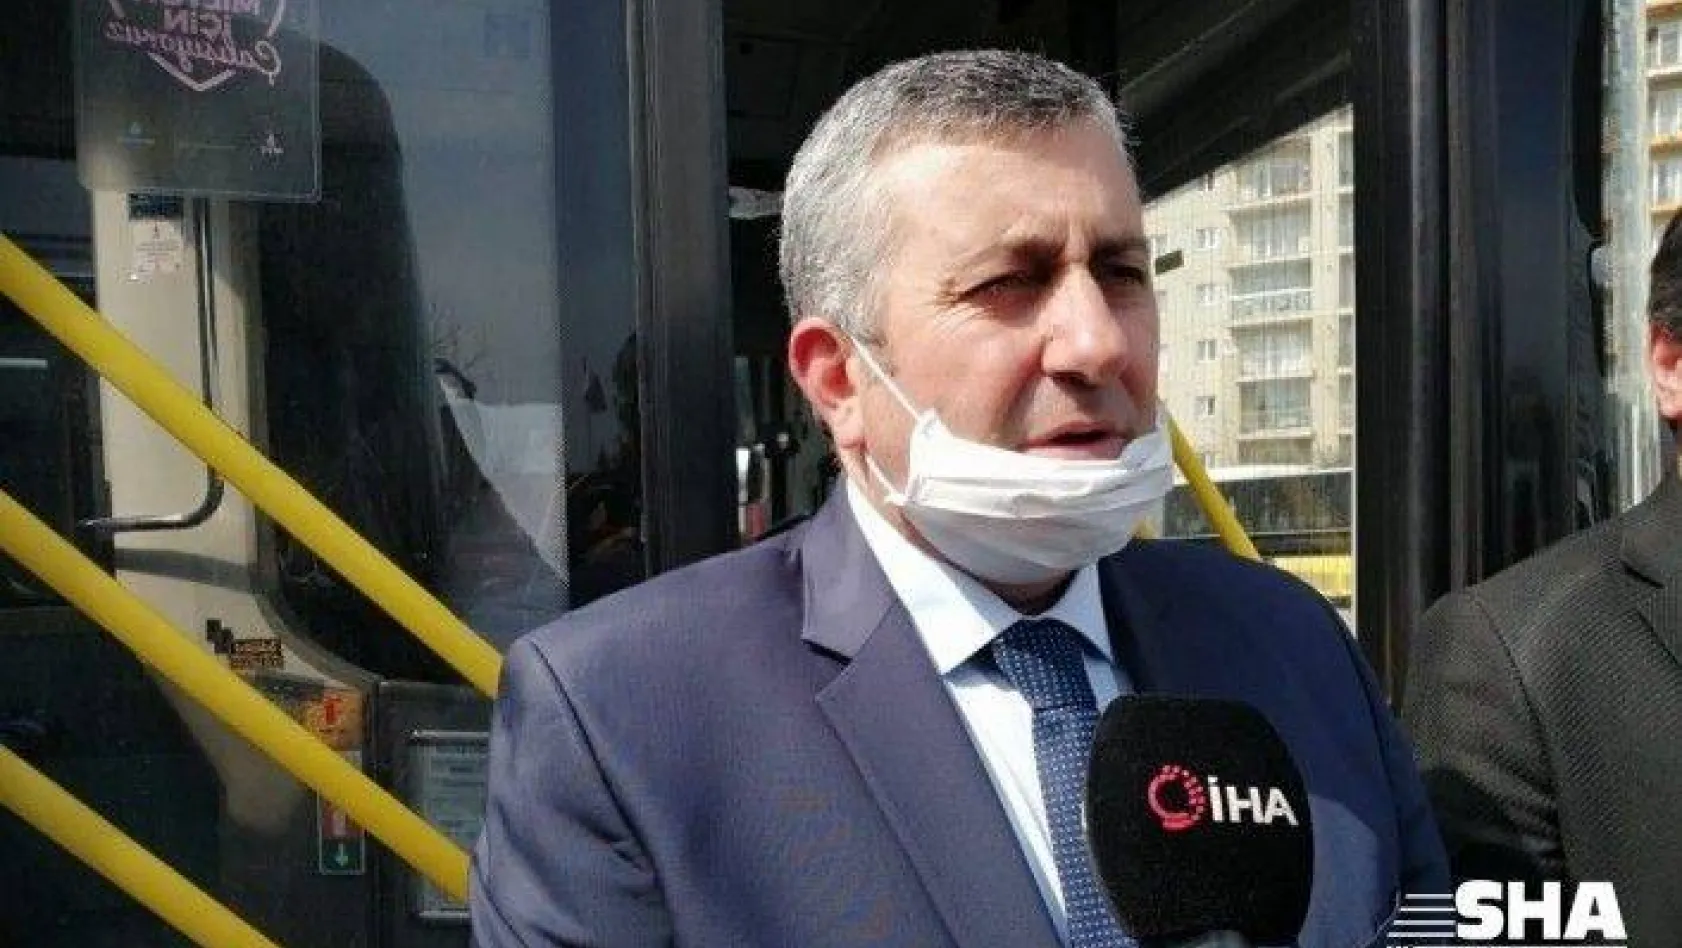 (Özel) İstanbul'da Özel Halk Otobüslerinde korona virüs önlemi